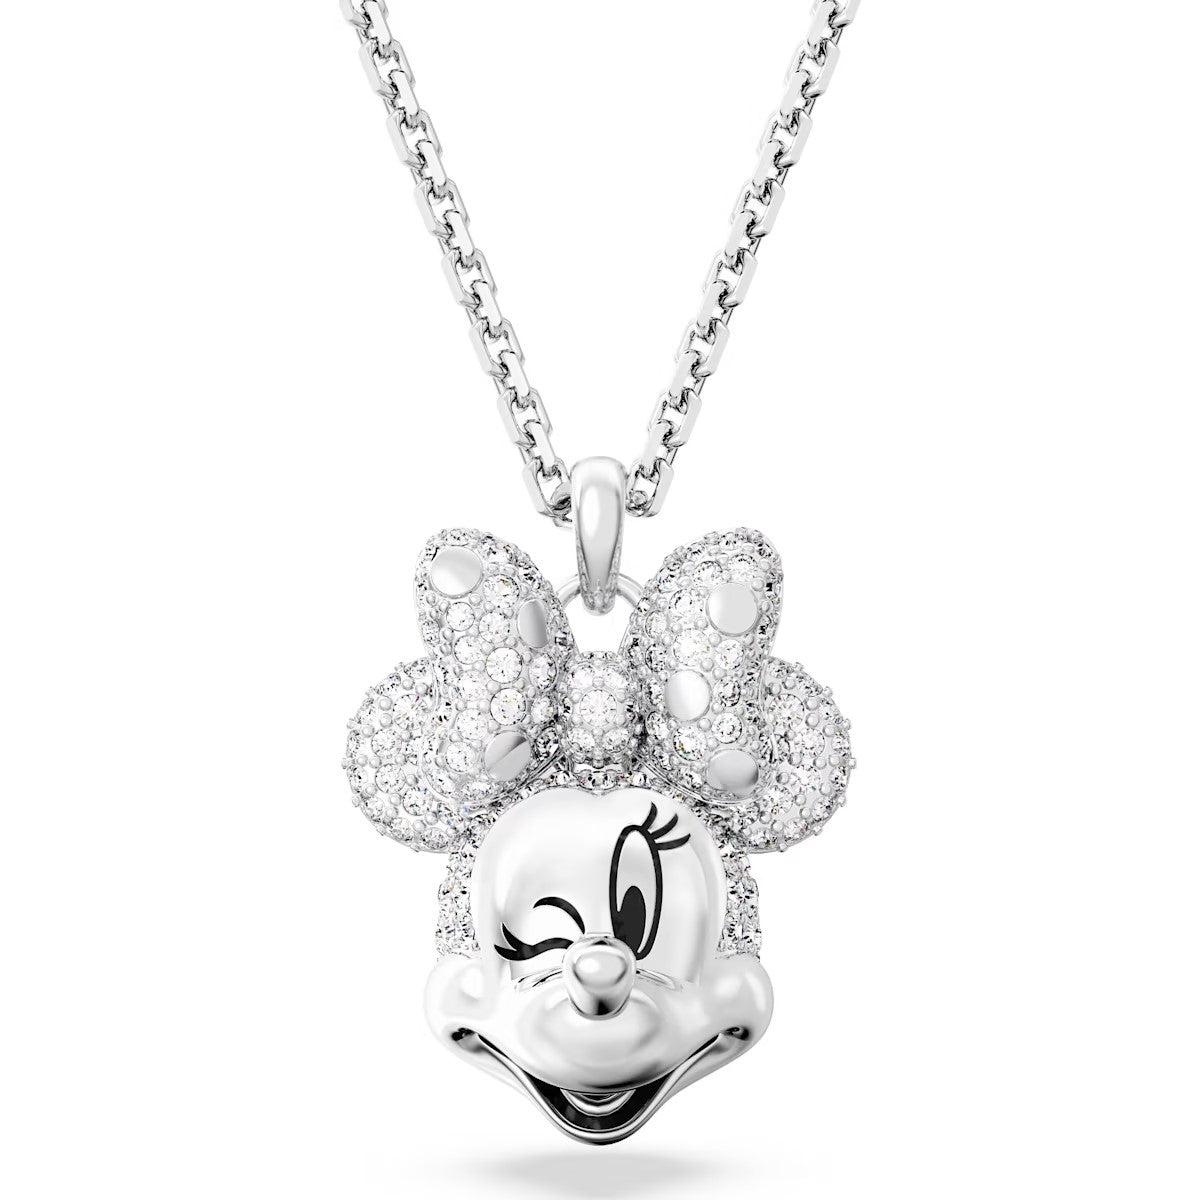 Swarovski Disney 100 - Colgante Minnie Mouse, blanco, Baño de rodio - 5667612 